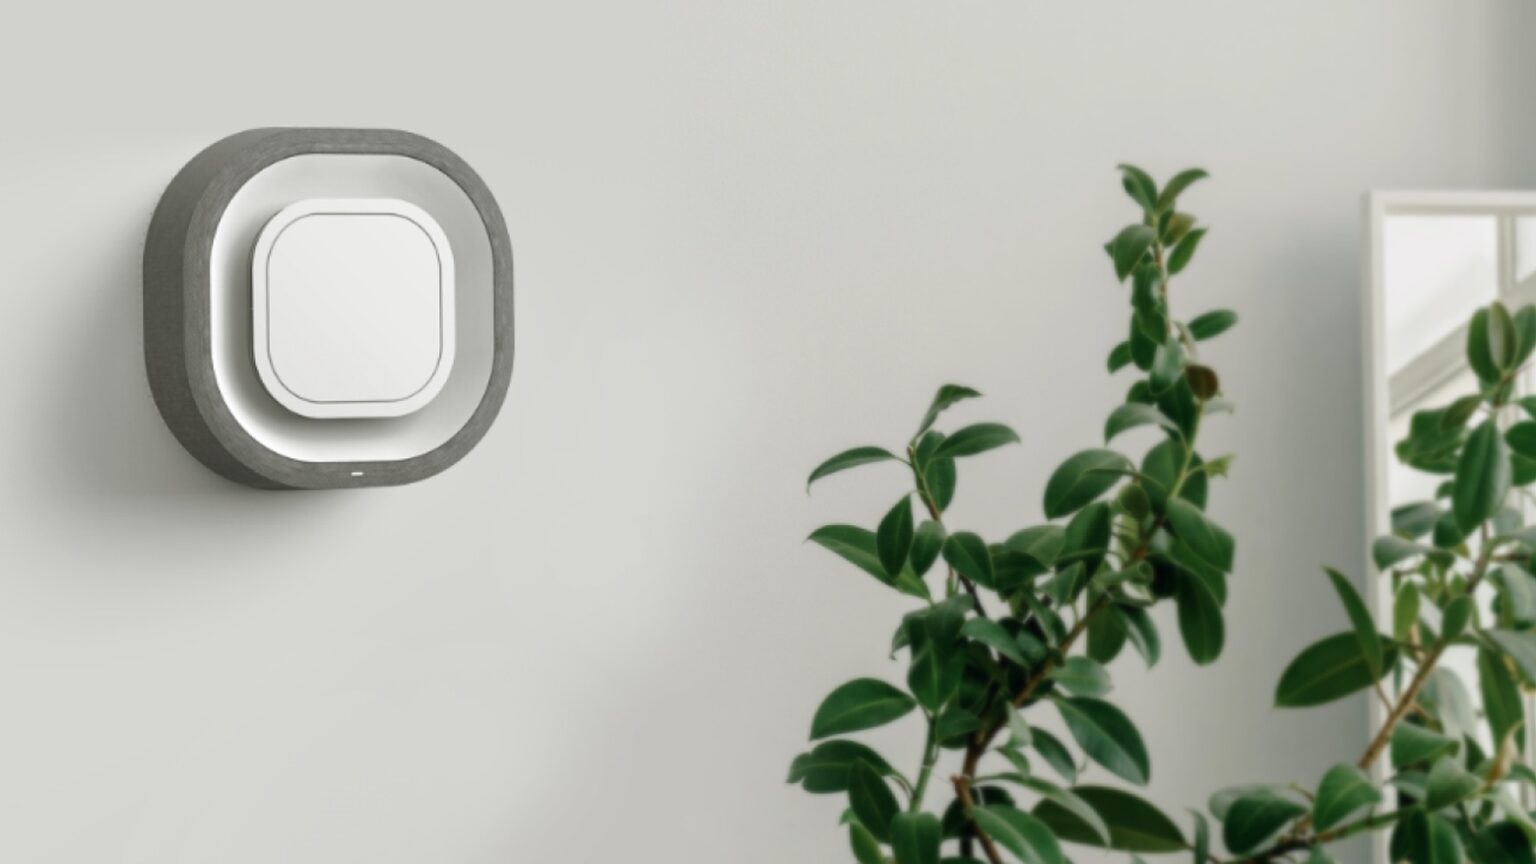 Aura Air purifier gets smarter with HomeKit